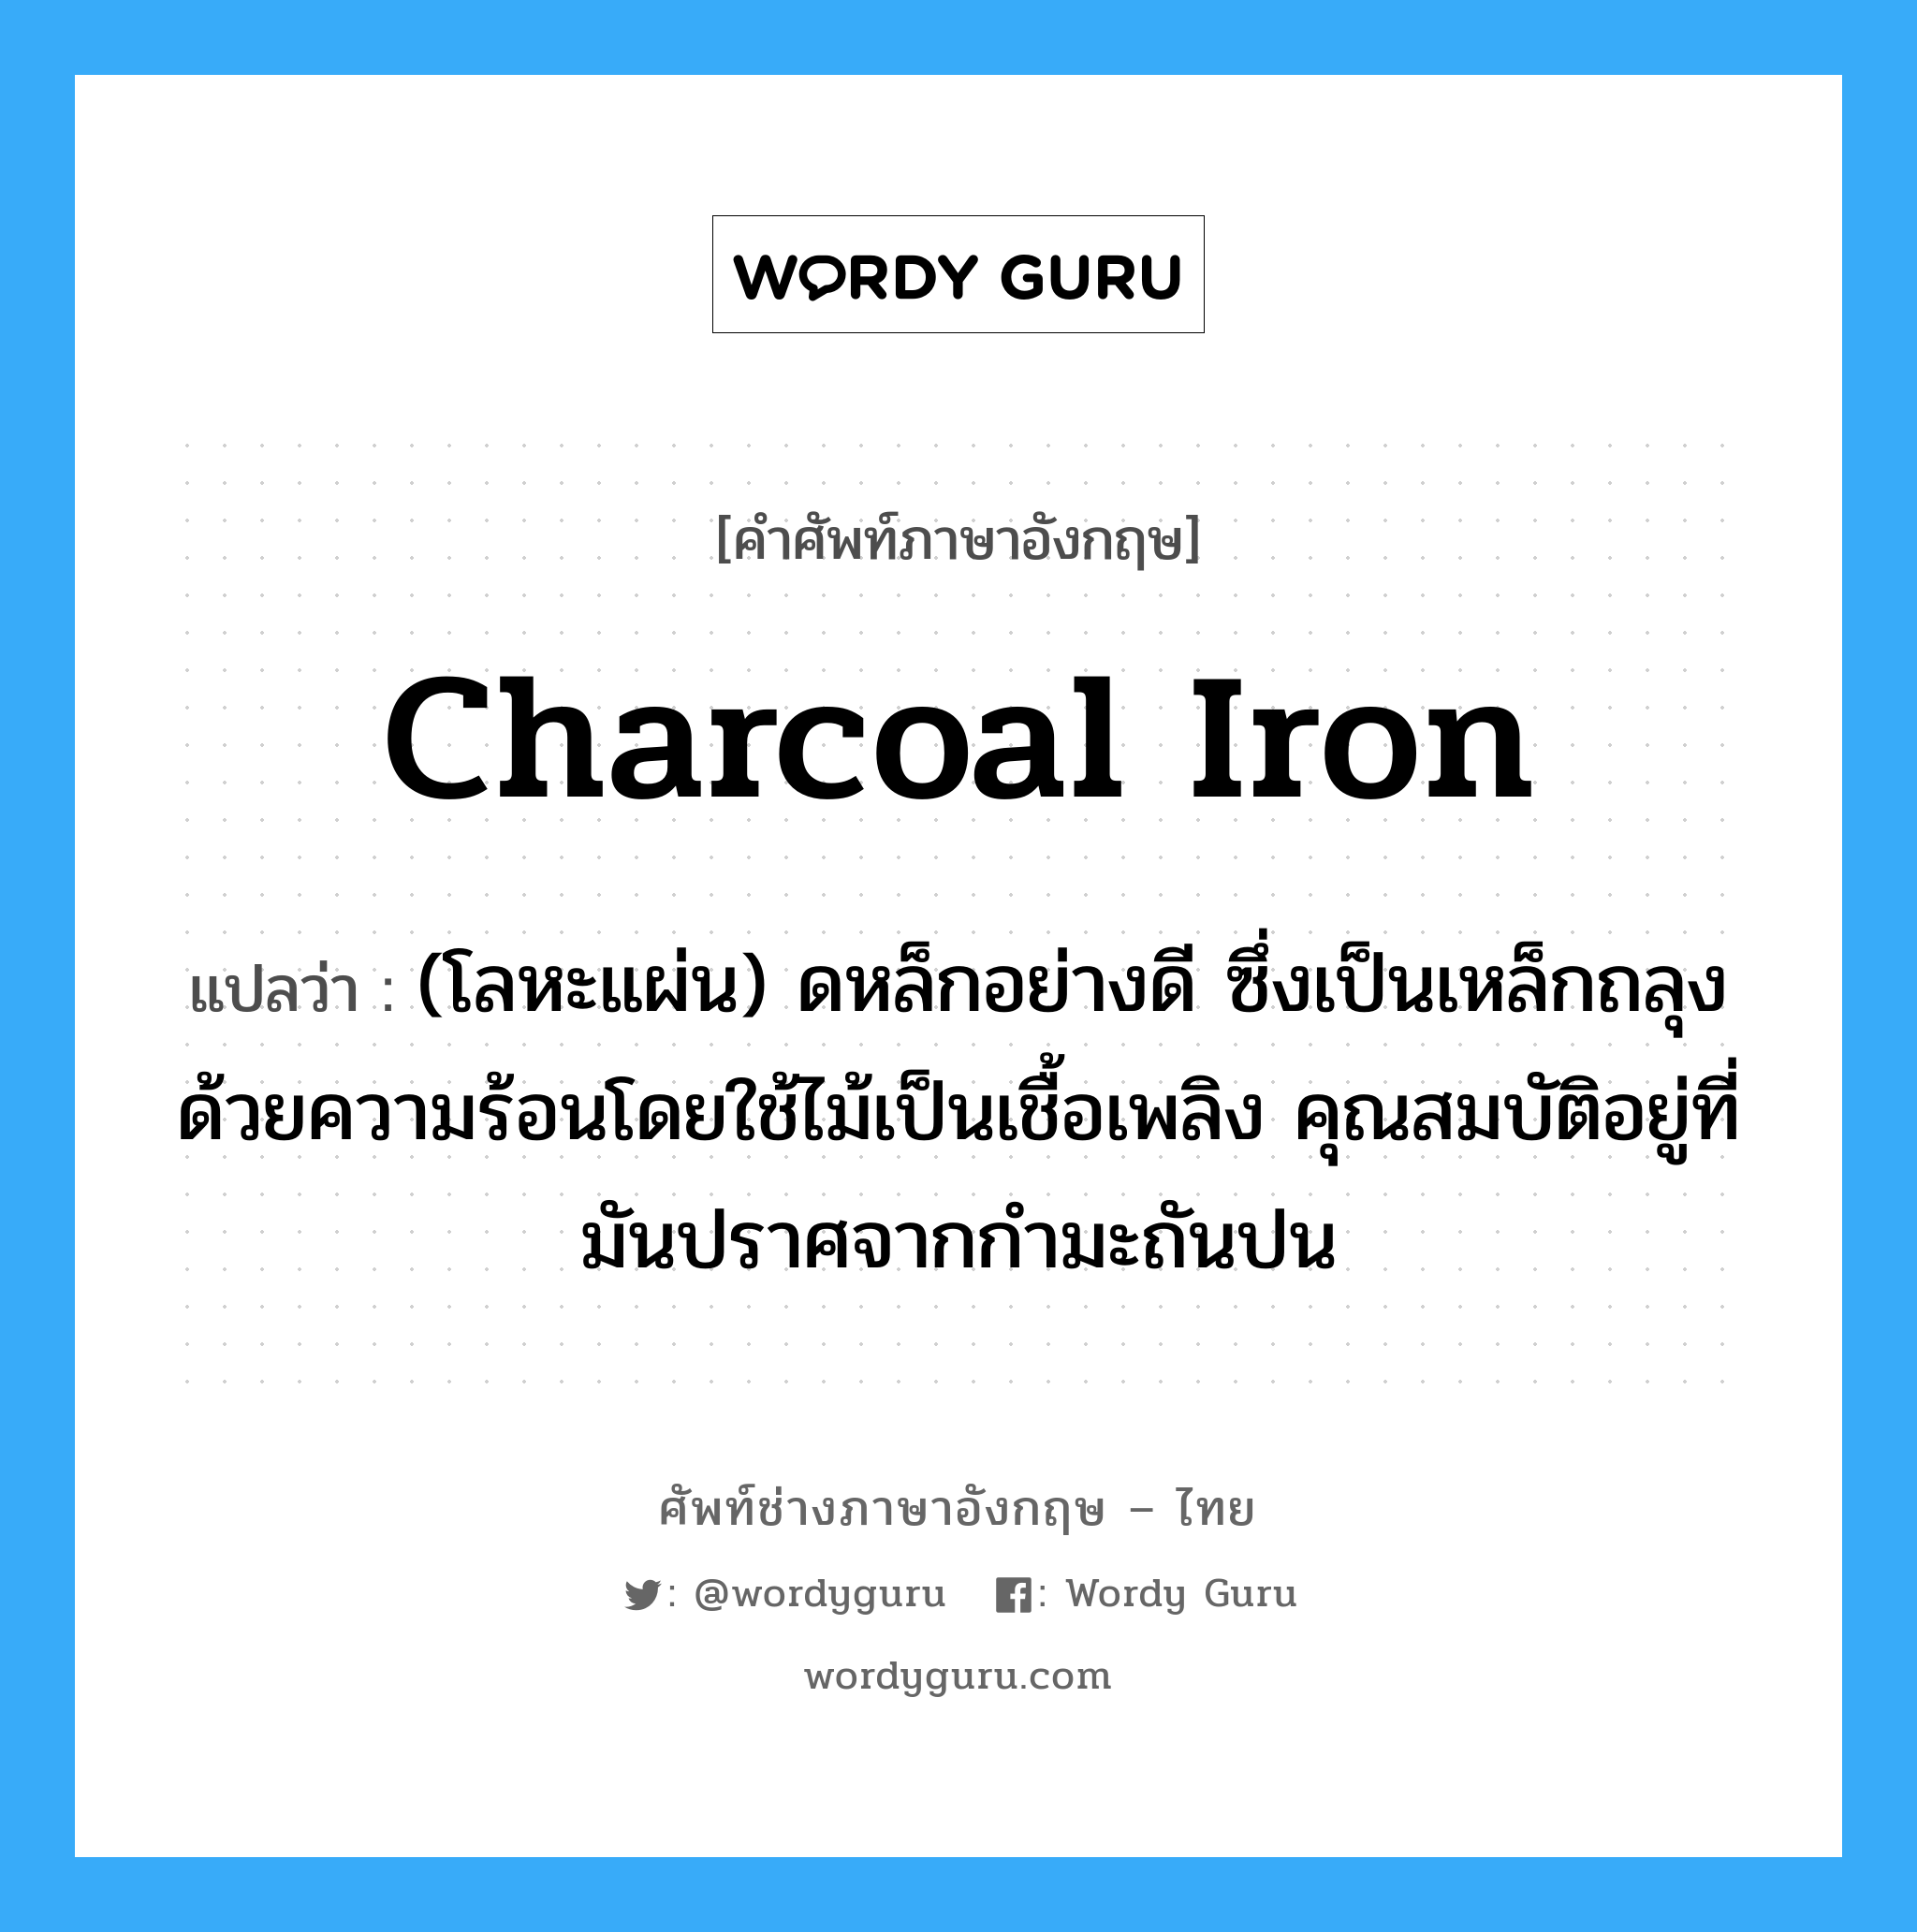 charcoal iron แปลว่า?, คำศัพท์ช่างภาษาอังกฤษ - ไทย charcoal iron คำศัพท์ภาษาอังกฤษ charcoal iron แปลว่า (โลหะแผ่น) ดหล็กอย่างดี ซึ่งเป็นเหล็กถลุงด้วยความร้อนโดยใช้ไม้เป็นเชื้อเพลิง คุณสมบัติอยู่ที่มันปราศจากกำมะถันปน